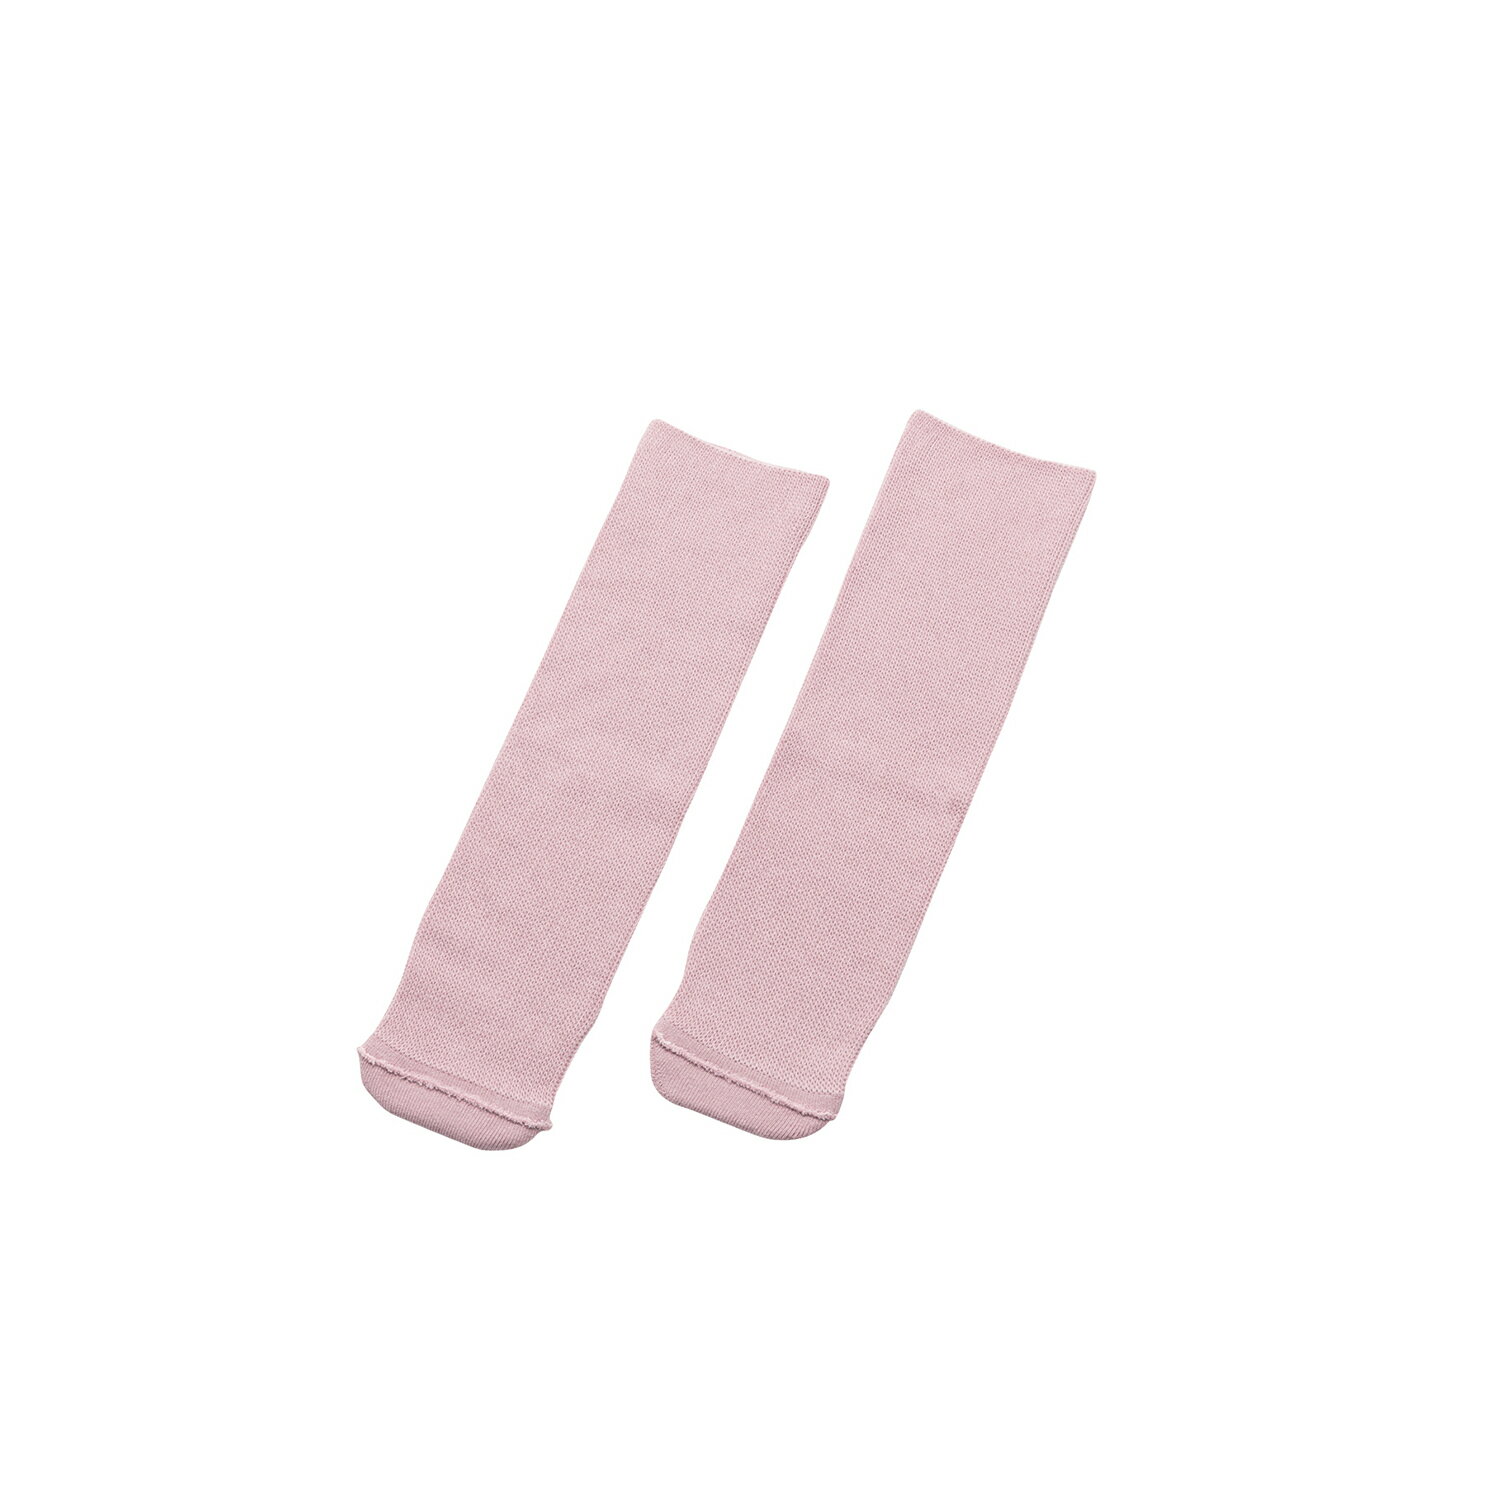 あゆみ靴下（のびのび） フリー ピンク あゆみ徳武産業4302●とても伸びるので、むくみや腫れでお悩みの方に適しています。●かかとがないので、尖足の方や変形のある方にもゆったり履けます。●抗菌防臭加工糸使用。